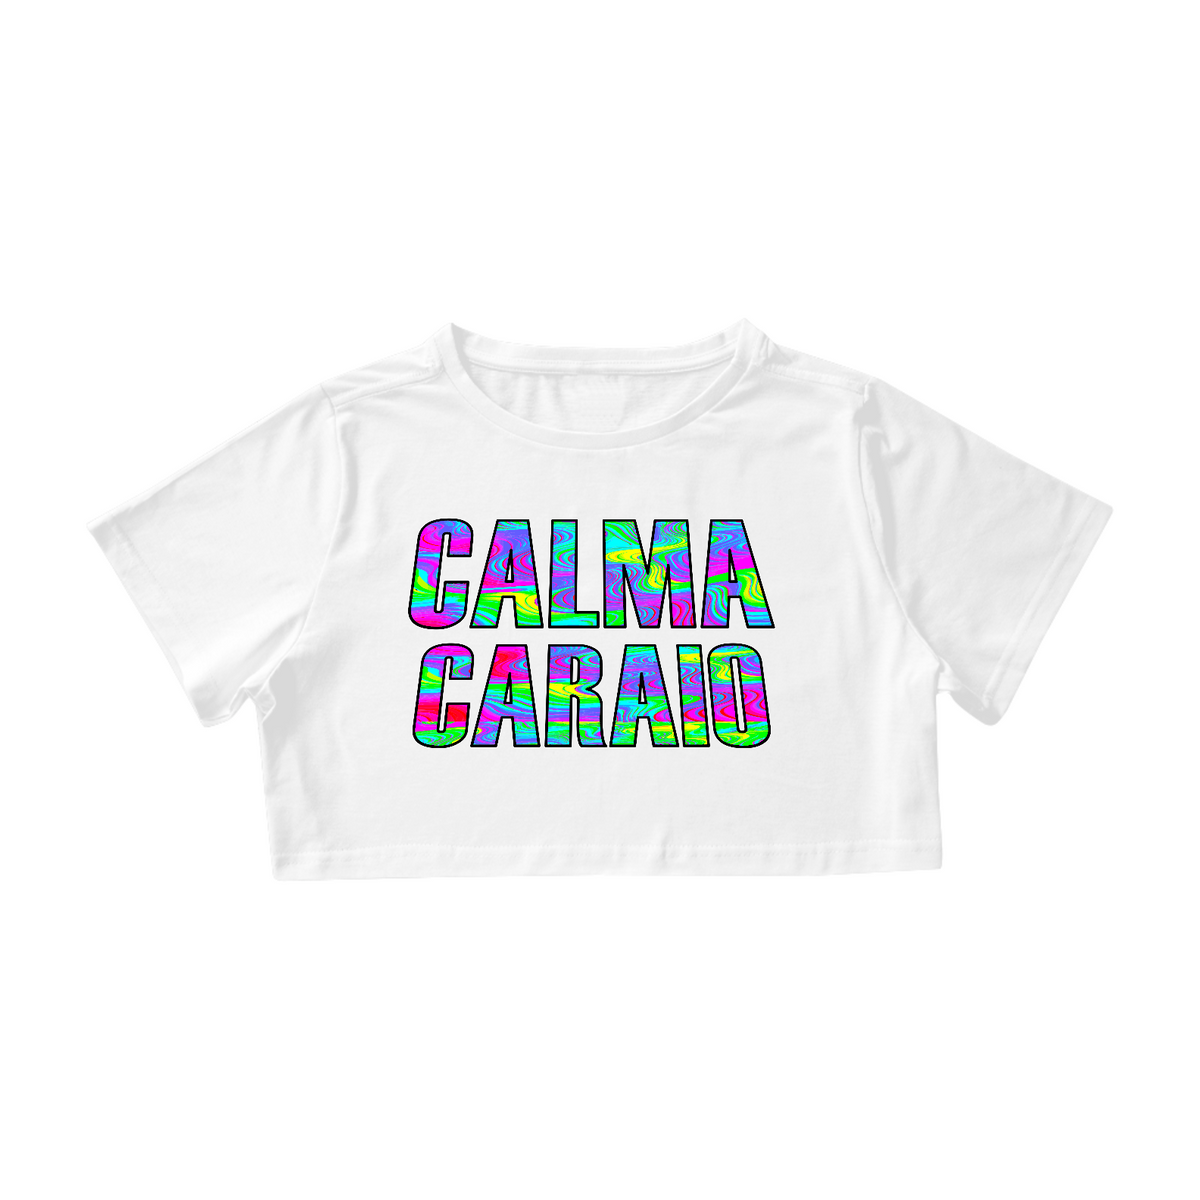 Nome do produto: Cropped CALMA CARAIO